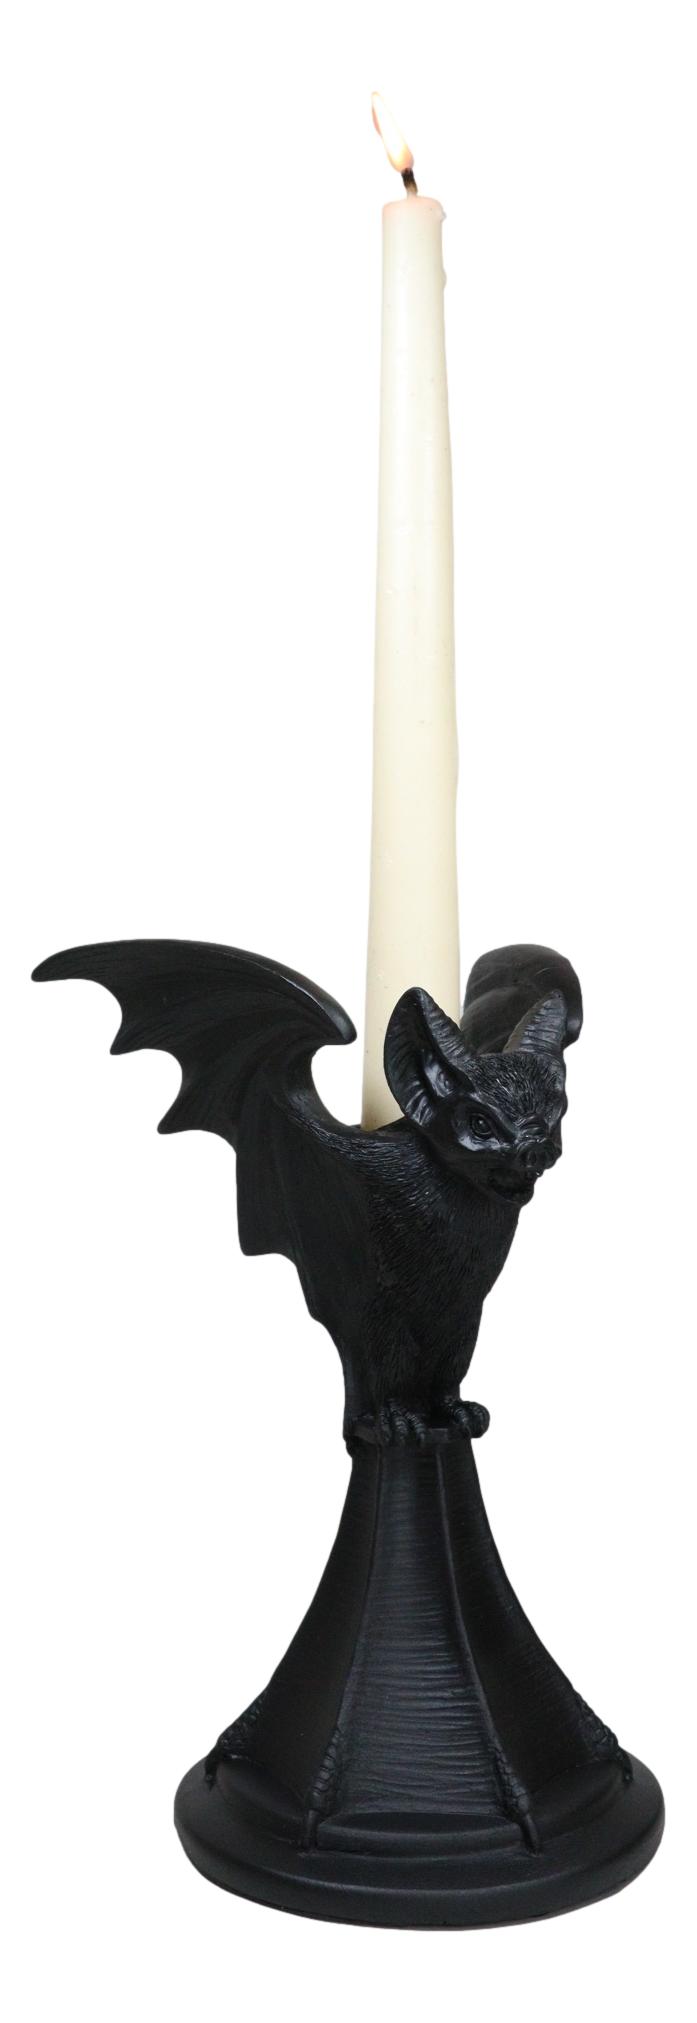 Wicca Gothic Black Gargoyle Vampire Bat Vespertilio Candlestick Holder Figurine